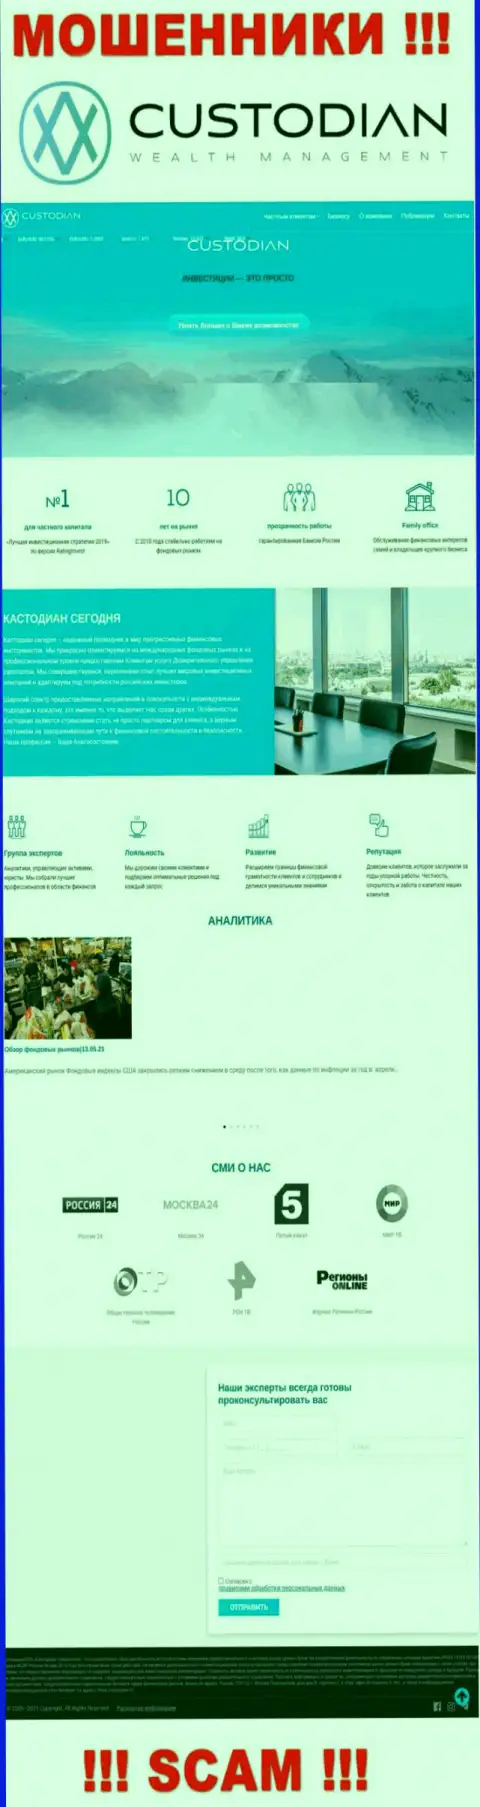 Скриншот официального веб-сервиса преступно действующей конторы Кустодиан